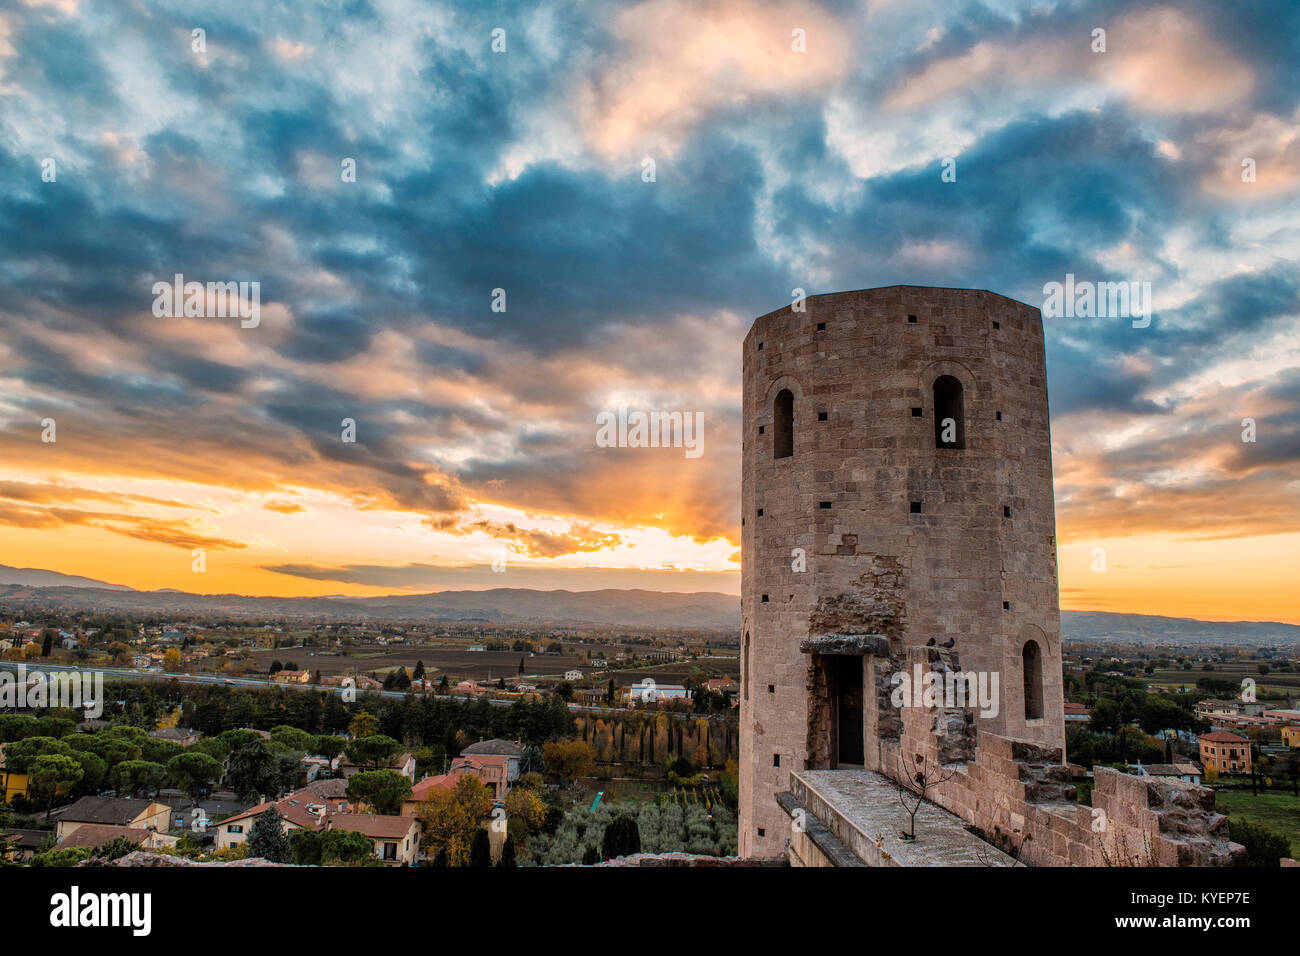 Spello, Perugia, Umbrien. Umbrien das grüne Herz Italiens. Spektakuläres Bild bei Sonnenuntergang auf die imposanten Türme von Minerva, alte Tor der Stadt. Stockfoto